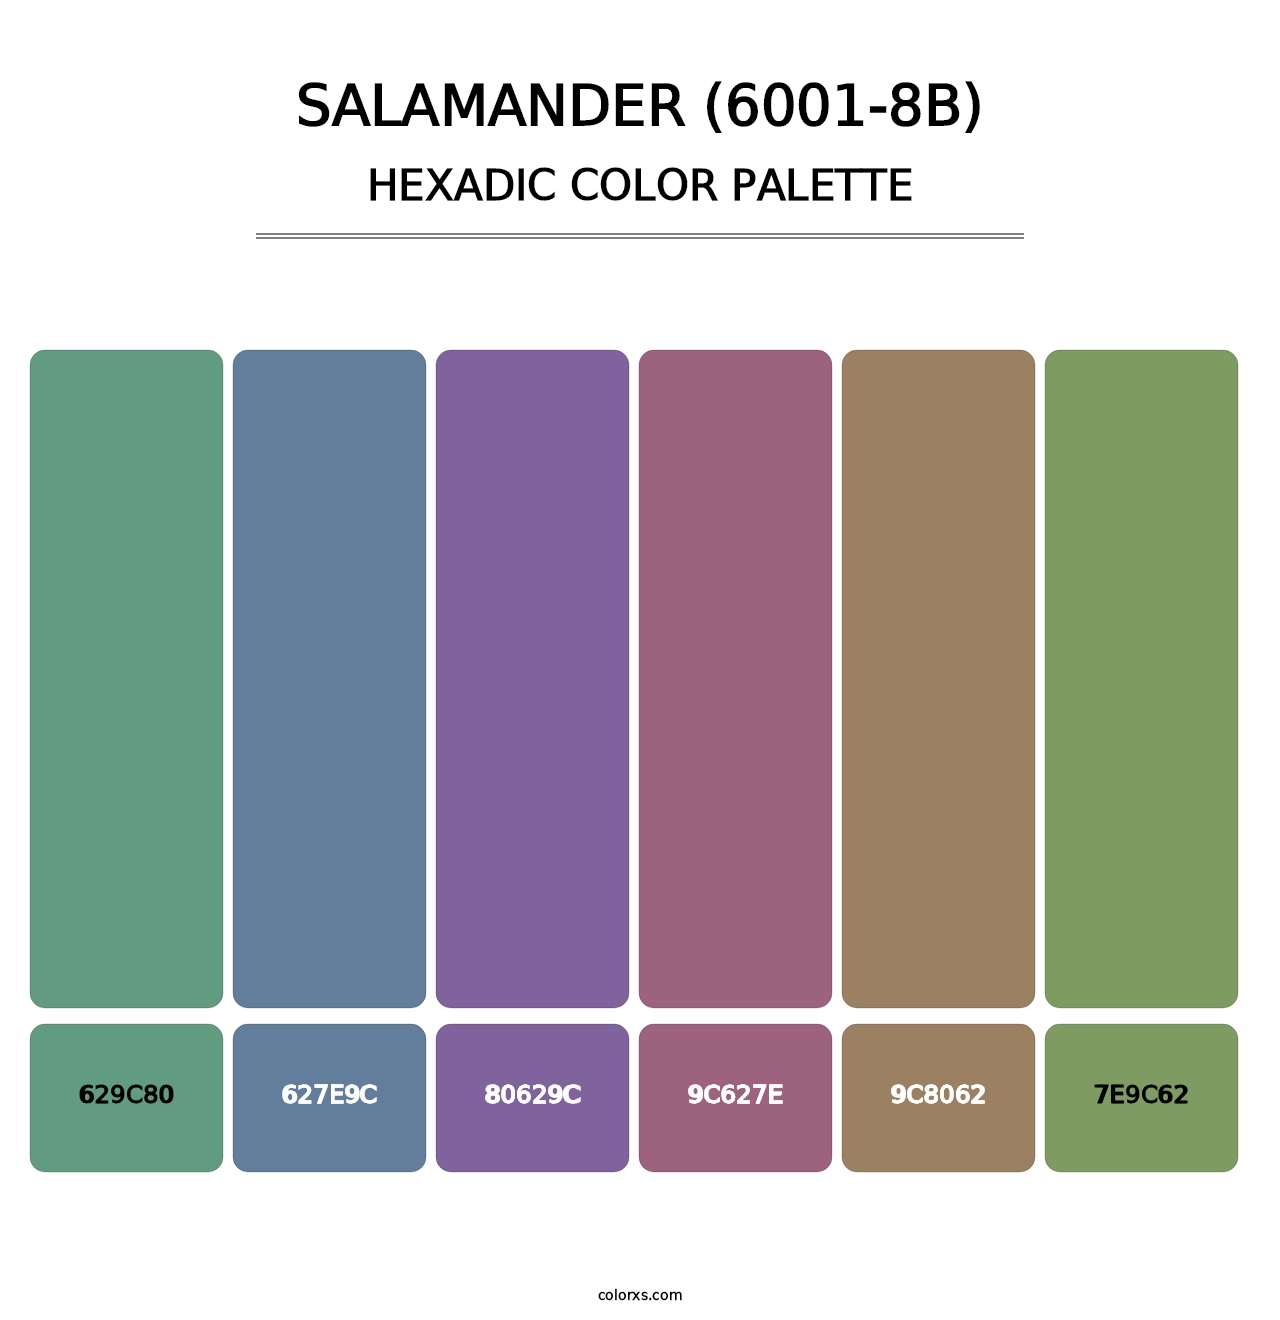 Salamander (6001-8B) - Hexadic Color Palette